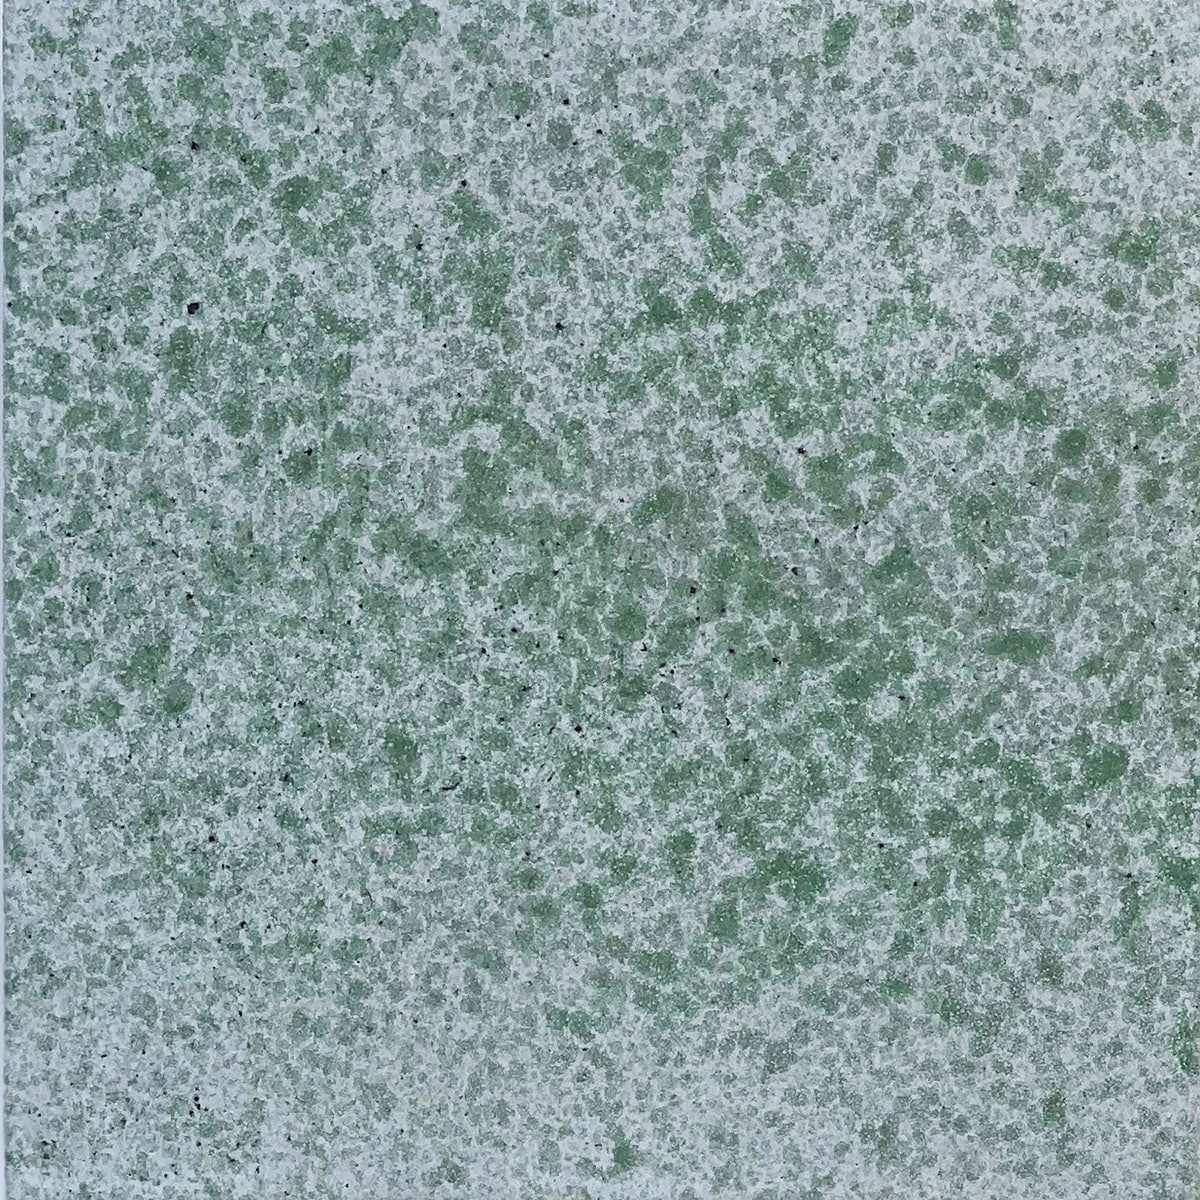 Speckles-BASIL green-min_1024x1024@2x